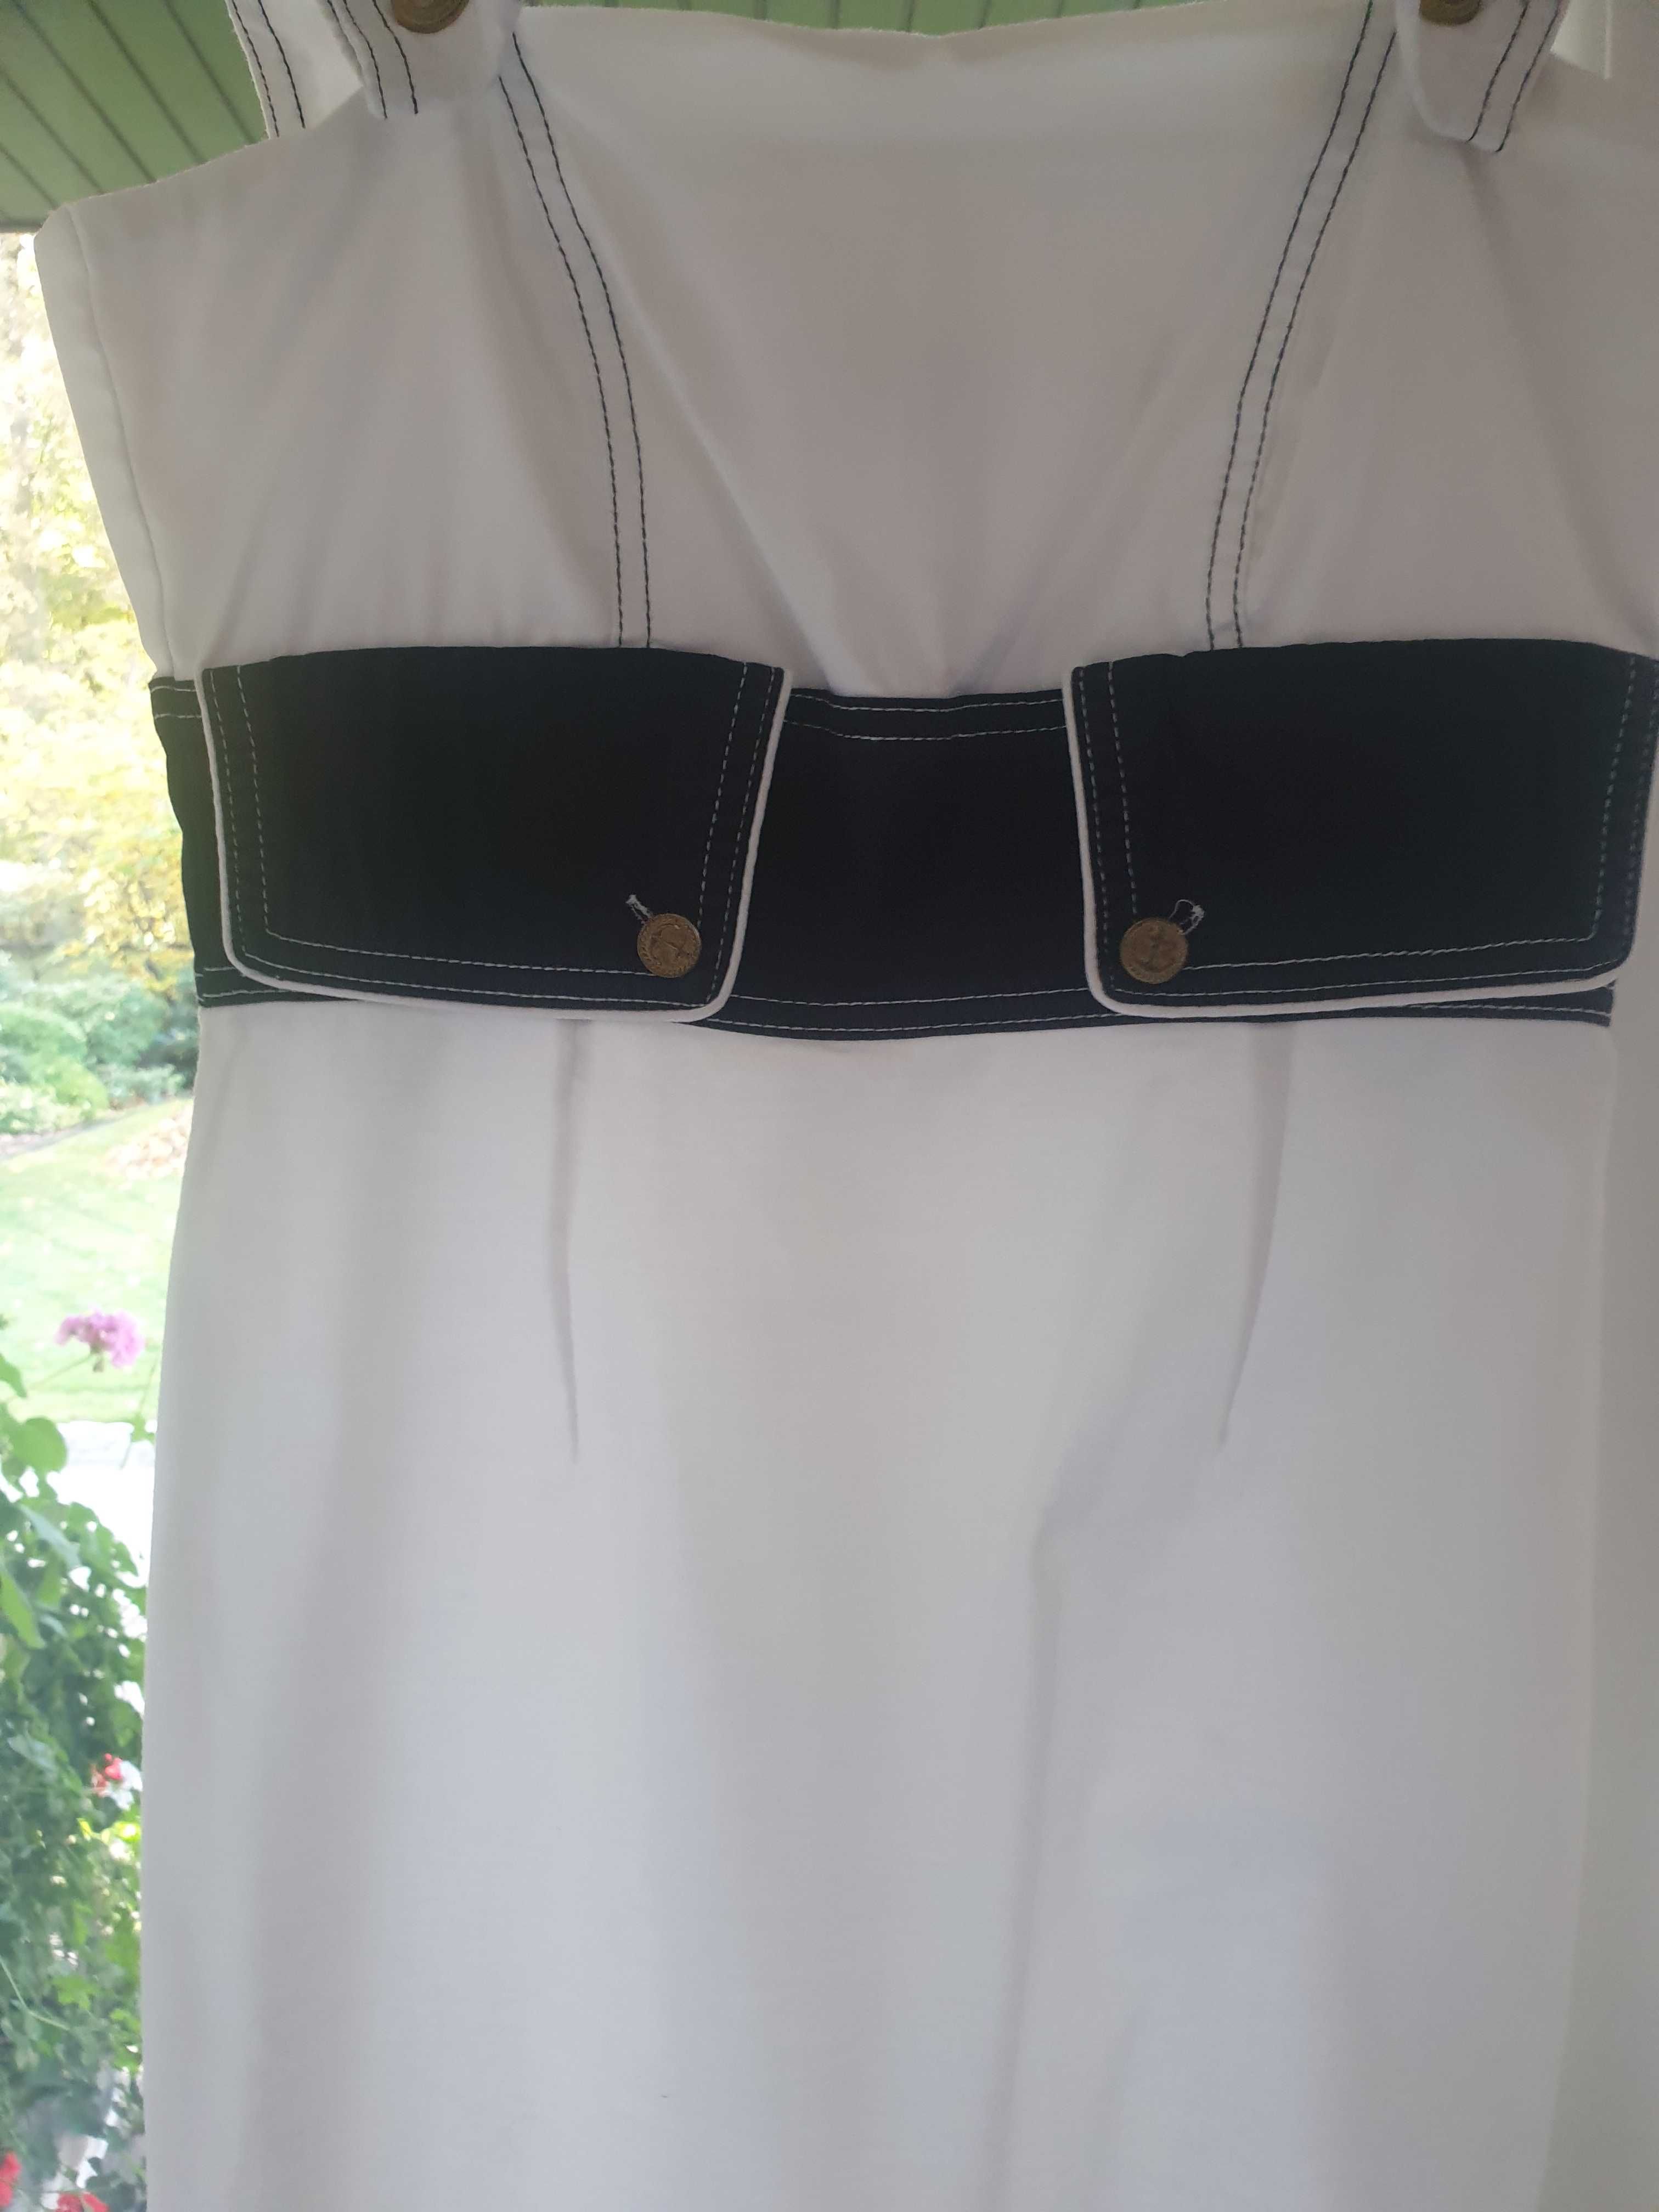 Sukienka biało-niebieska styl Marino rozm L(40)